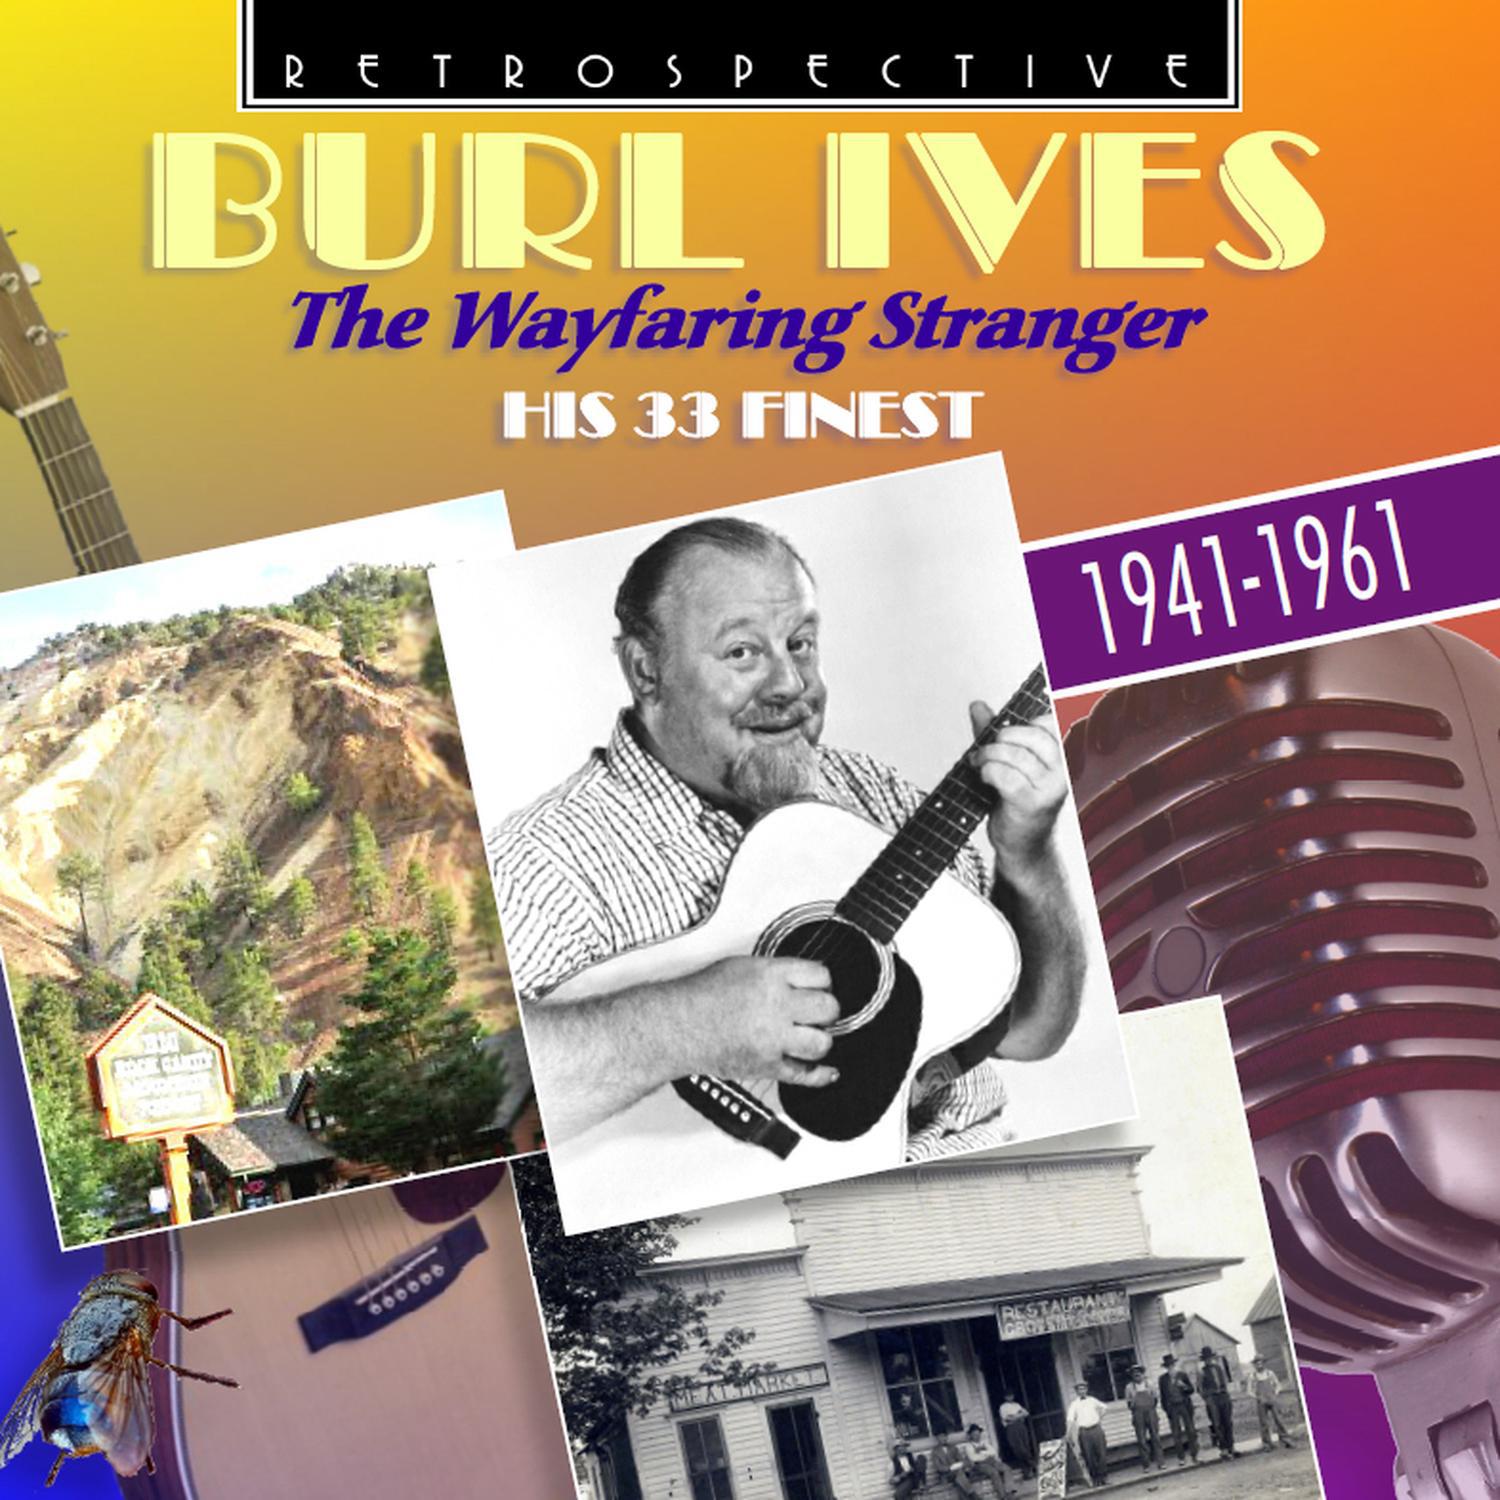 Burl Ives "The Wayfaring Stranger"